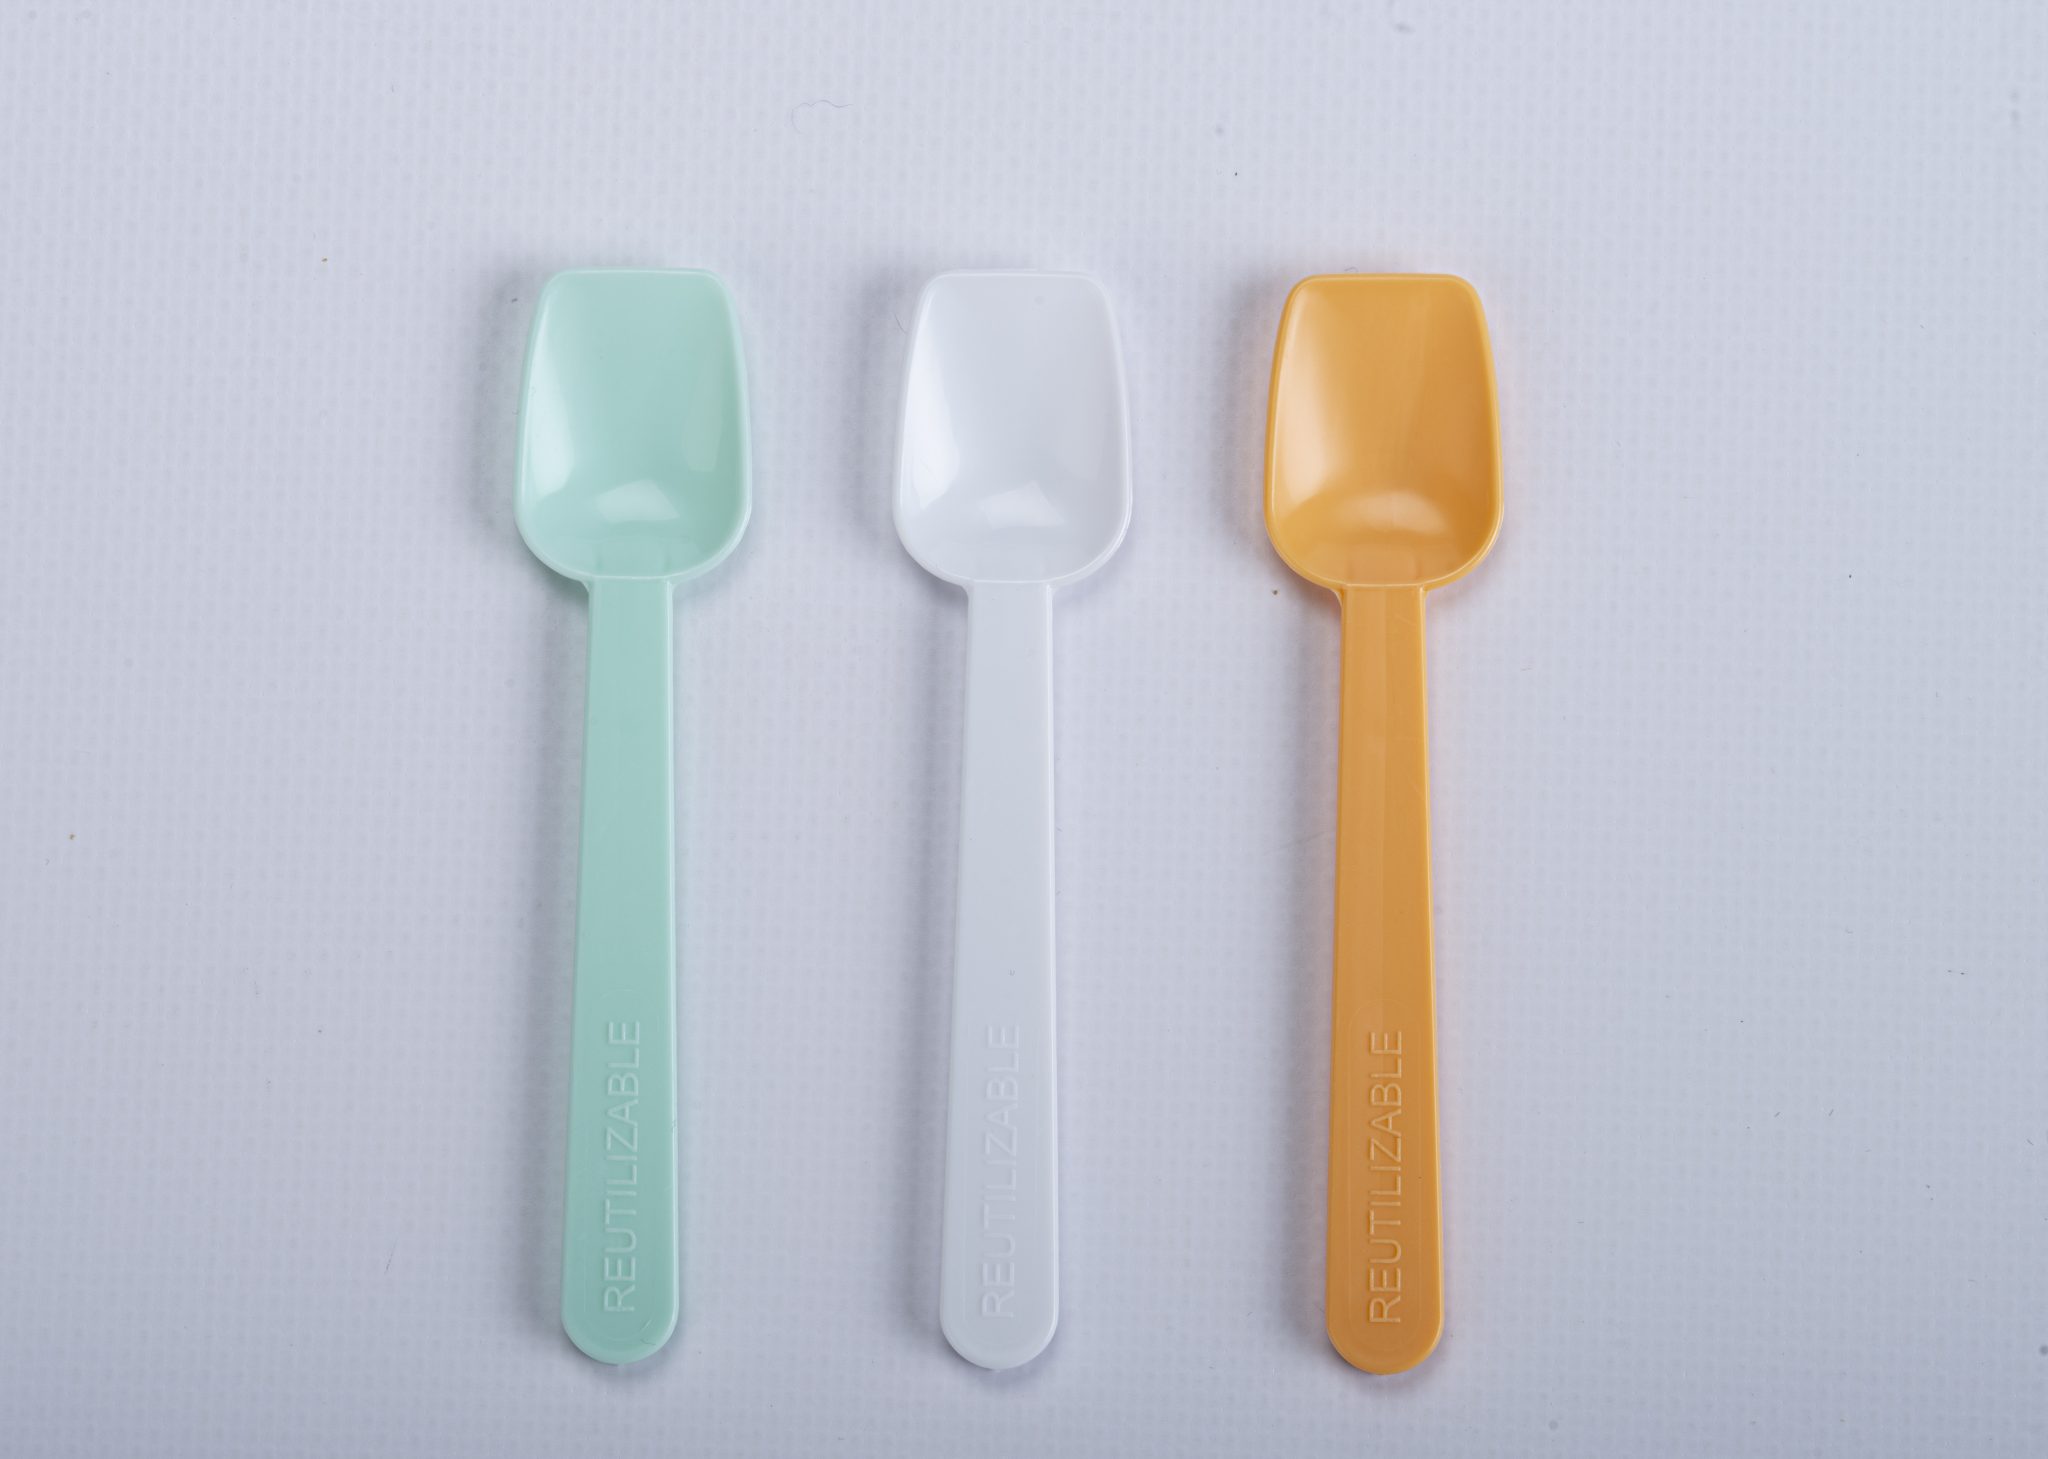 Cucharitas reutilizables de diferentes colores